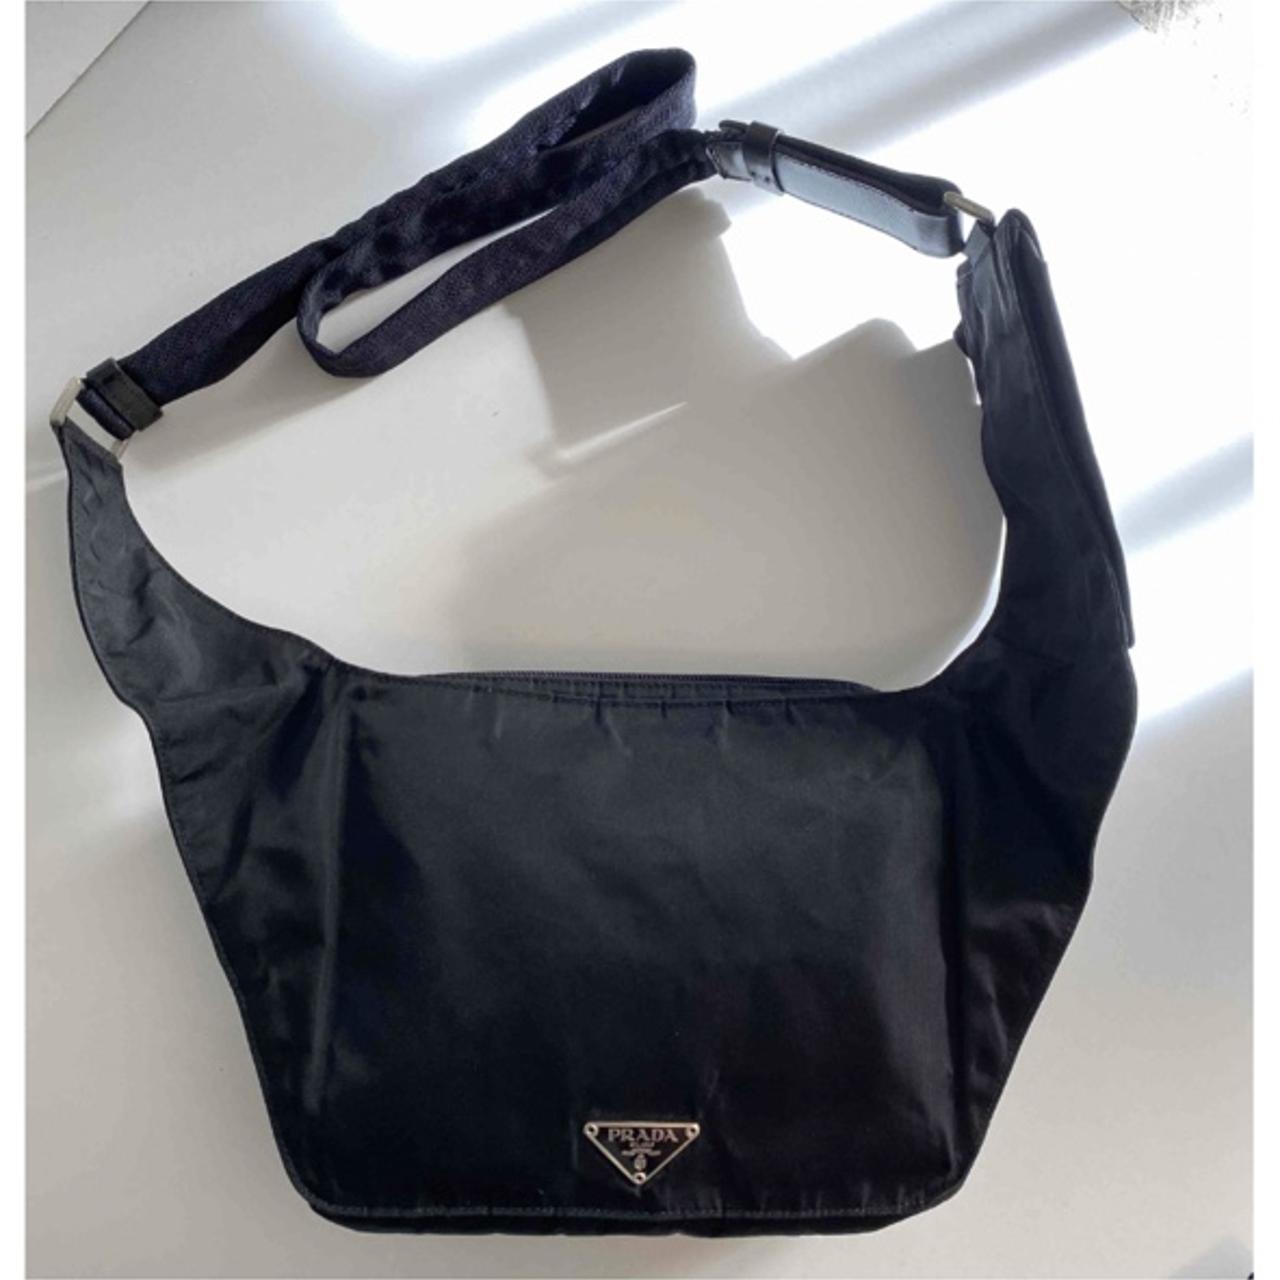 Prada Men's Black Bag | Depop